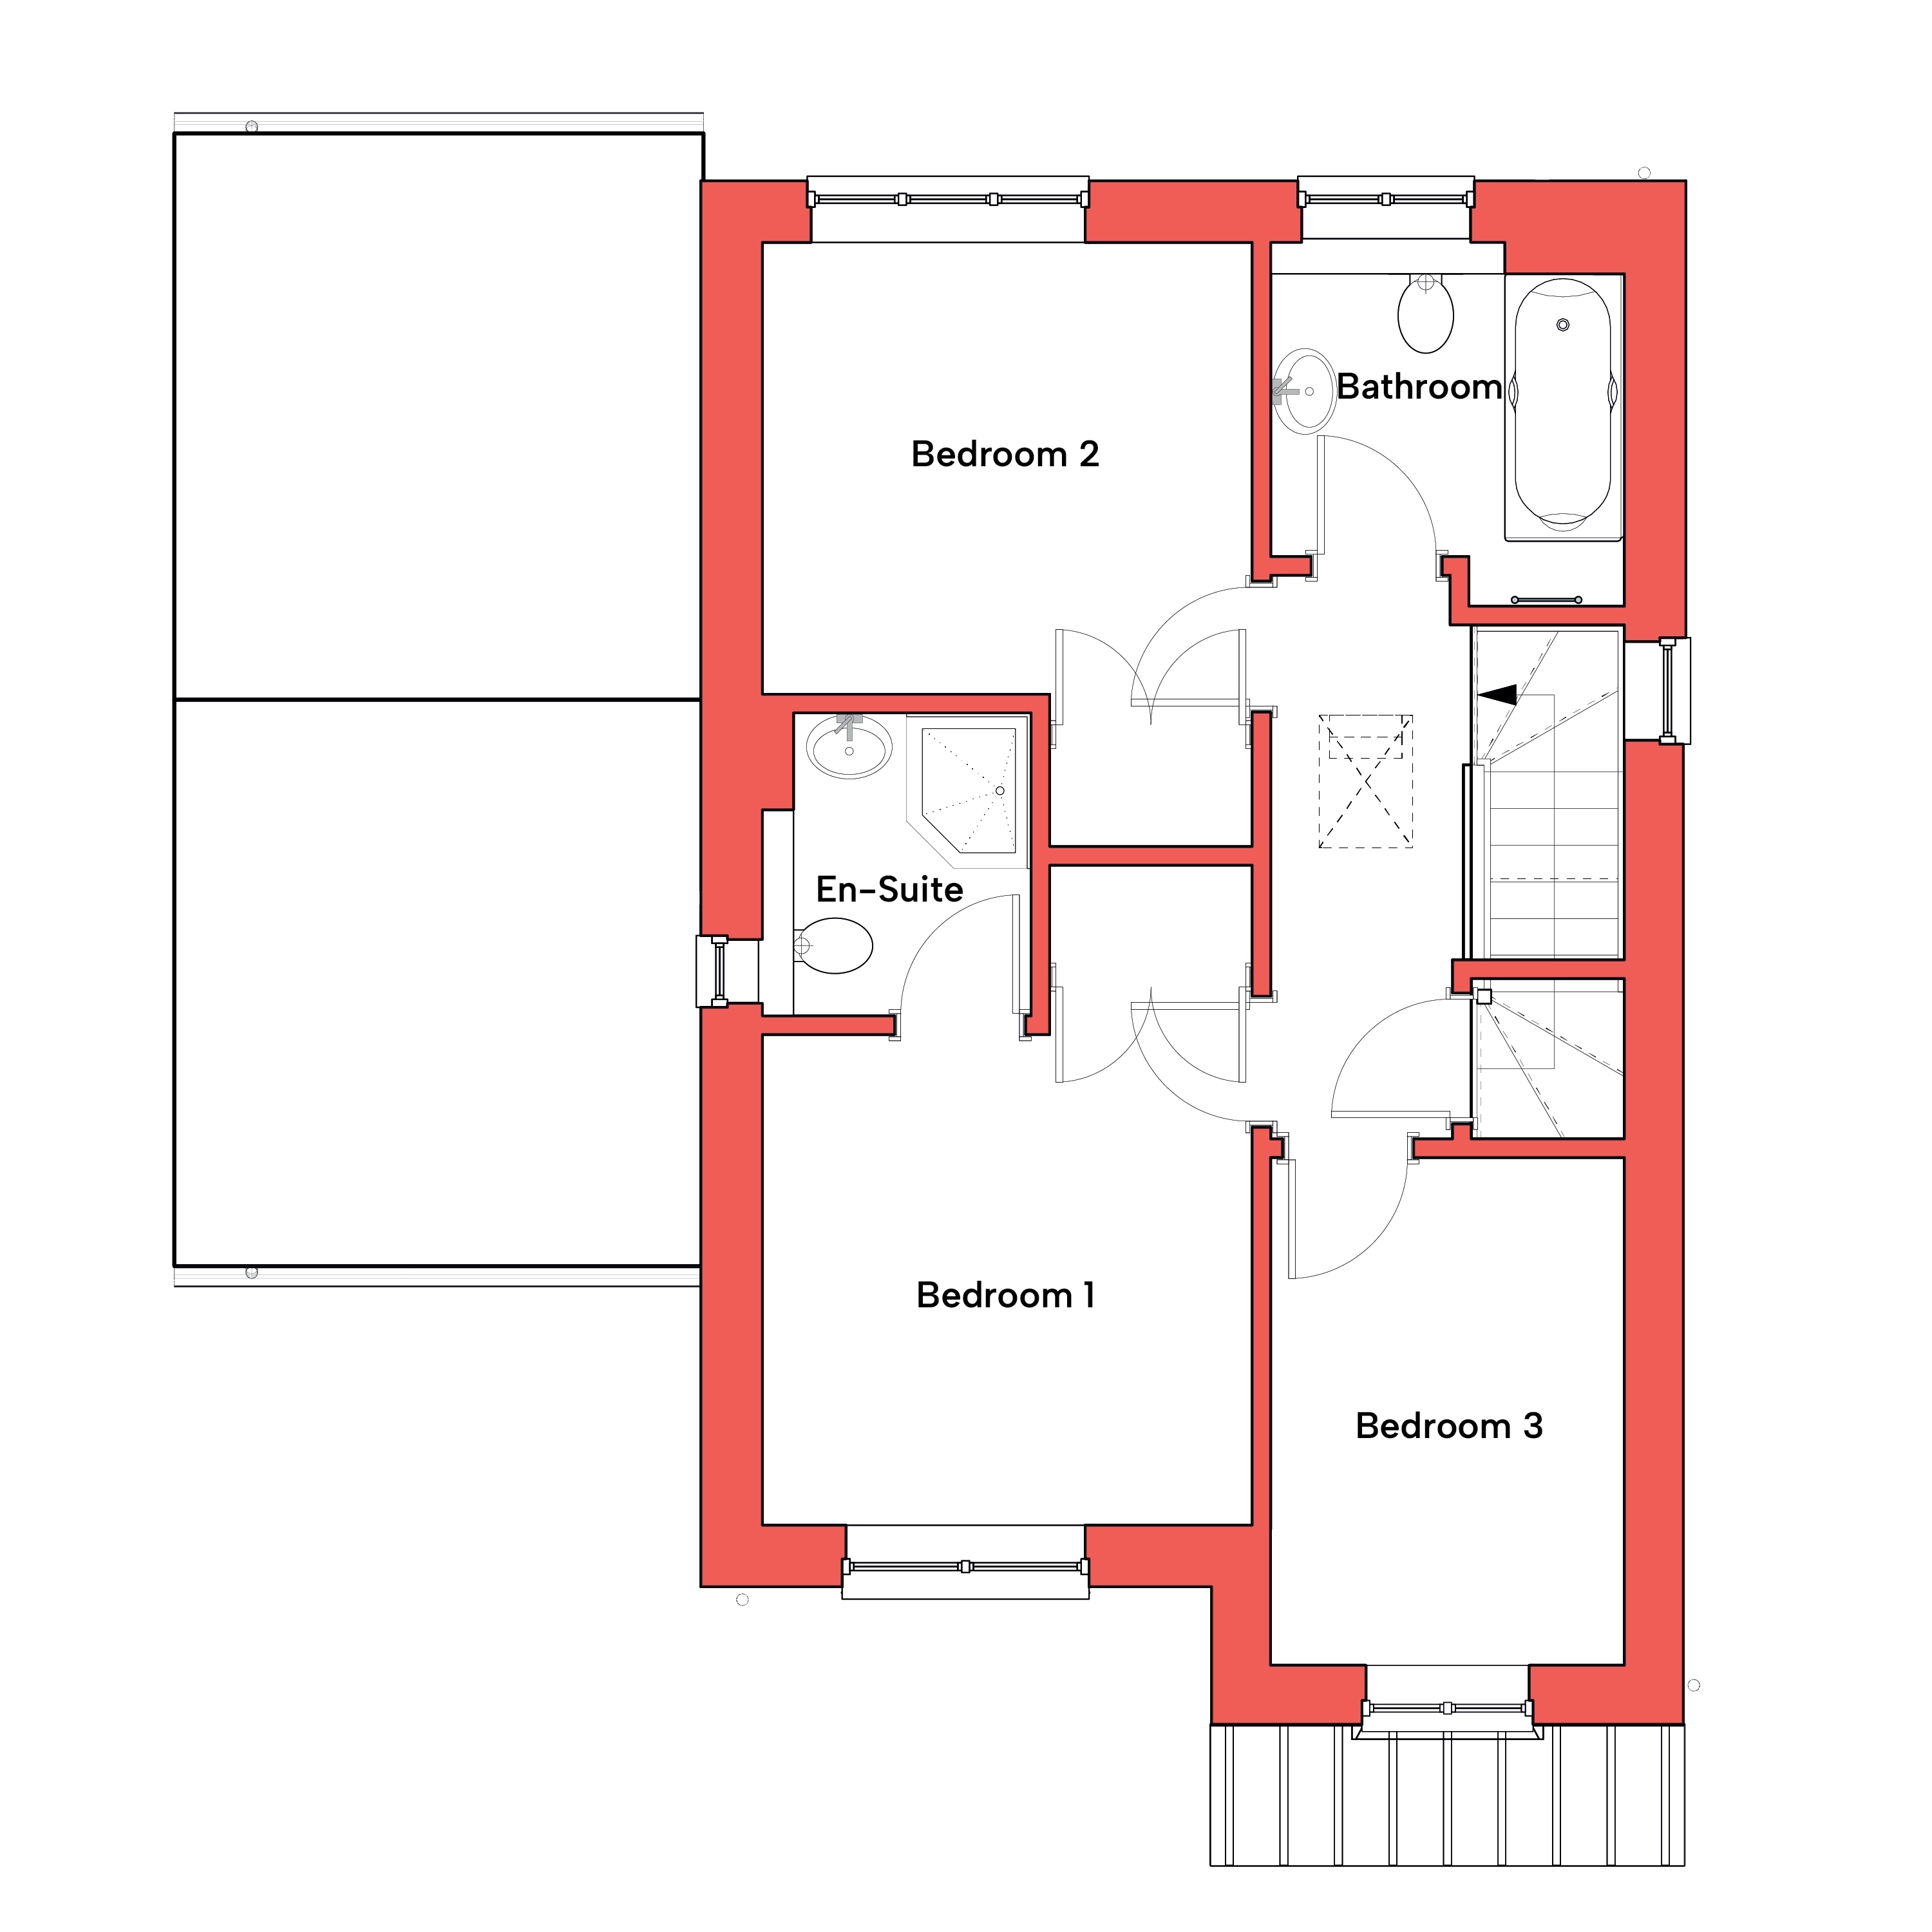 First floor floor plan of The Warbler